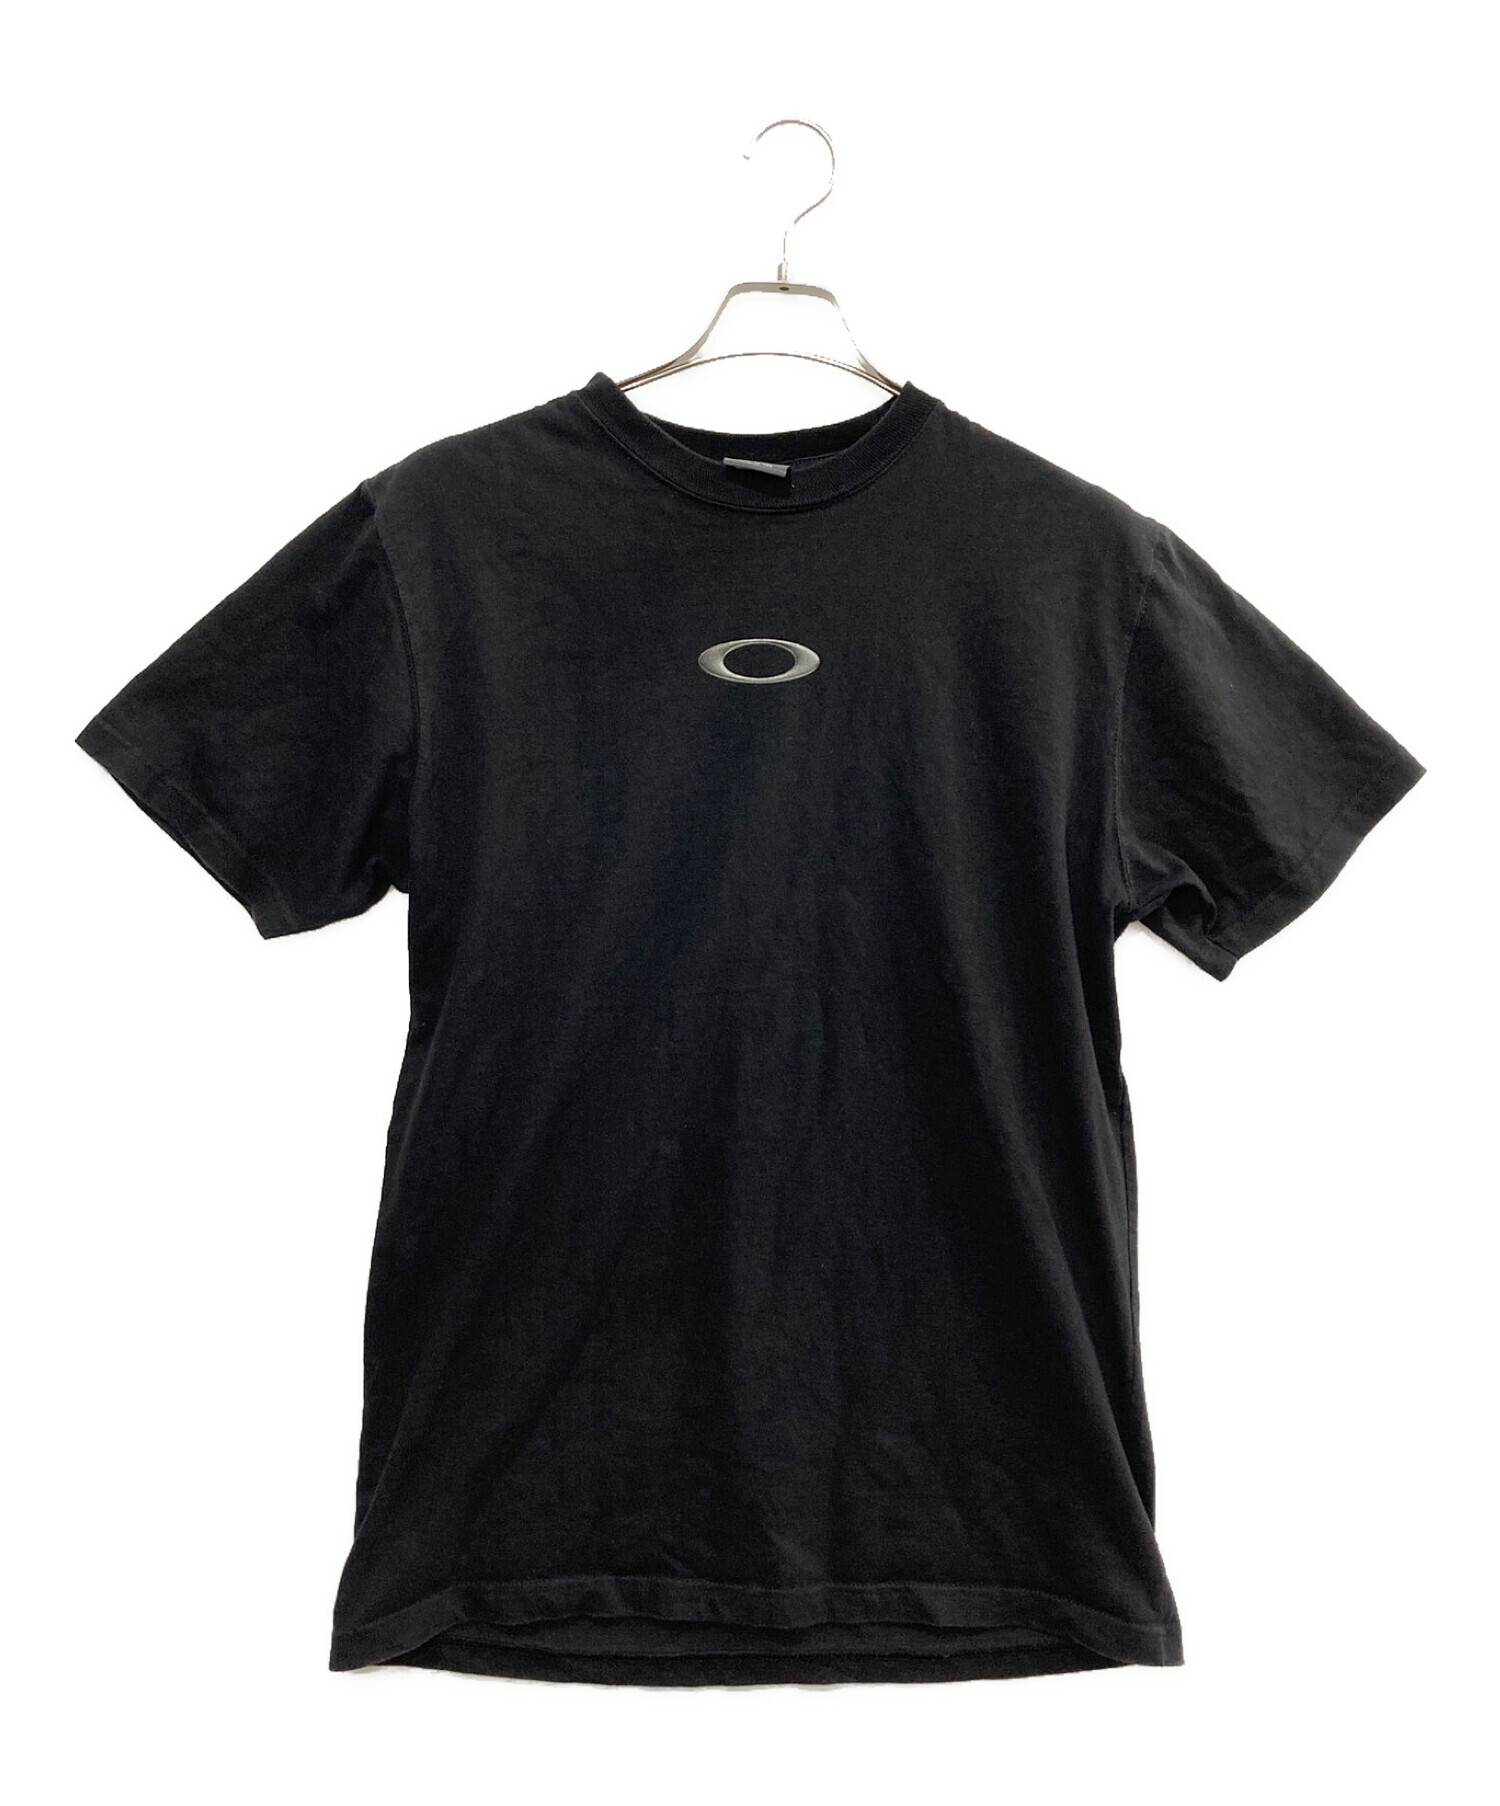 OAKLEY (オークリー) プリントTシャツ ブラック サイズ:M